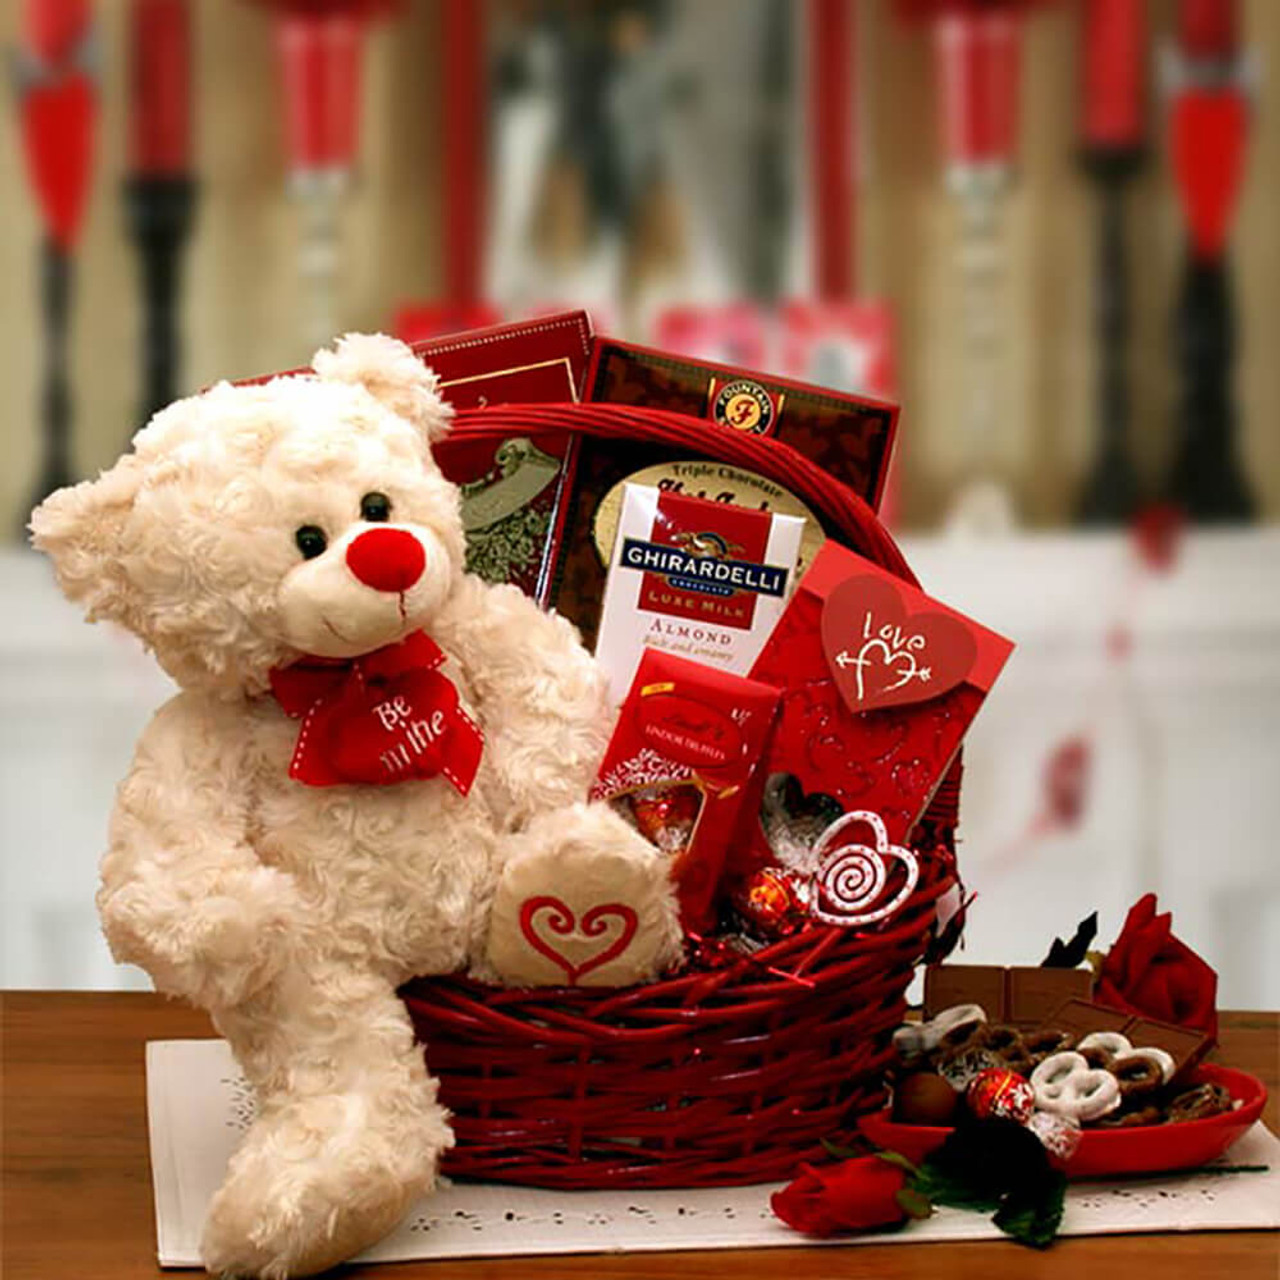 Be Mine Valentine’s Day Gift Basket